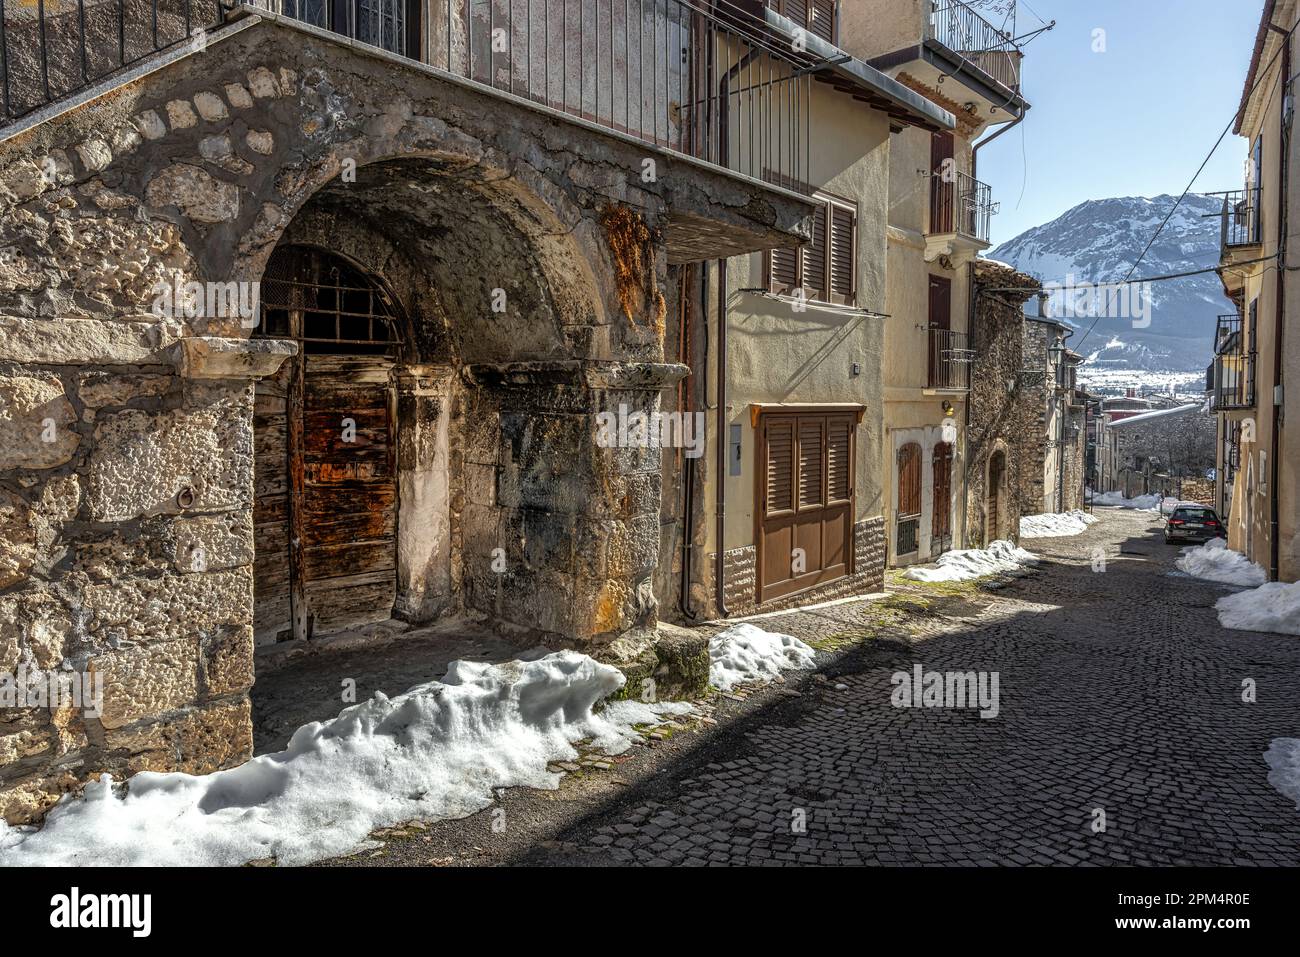 Scorci e facciate dei palazzi e delle case in pietra del piccolo borgo montano di campo di Giove nel Parco Nazionale della Maiella. Abruzzo Foto Stock